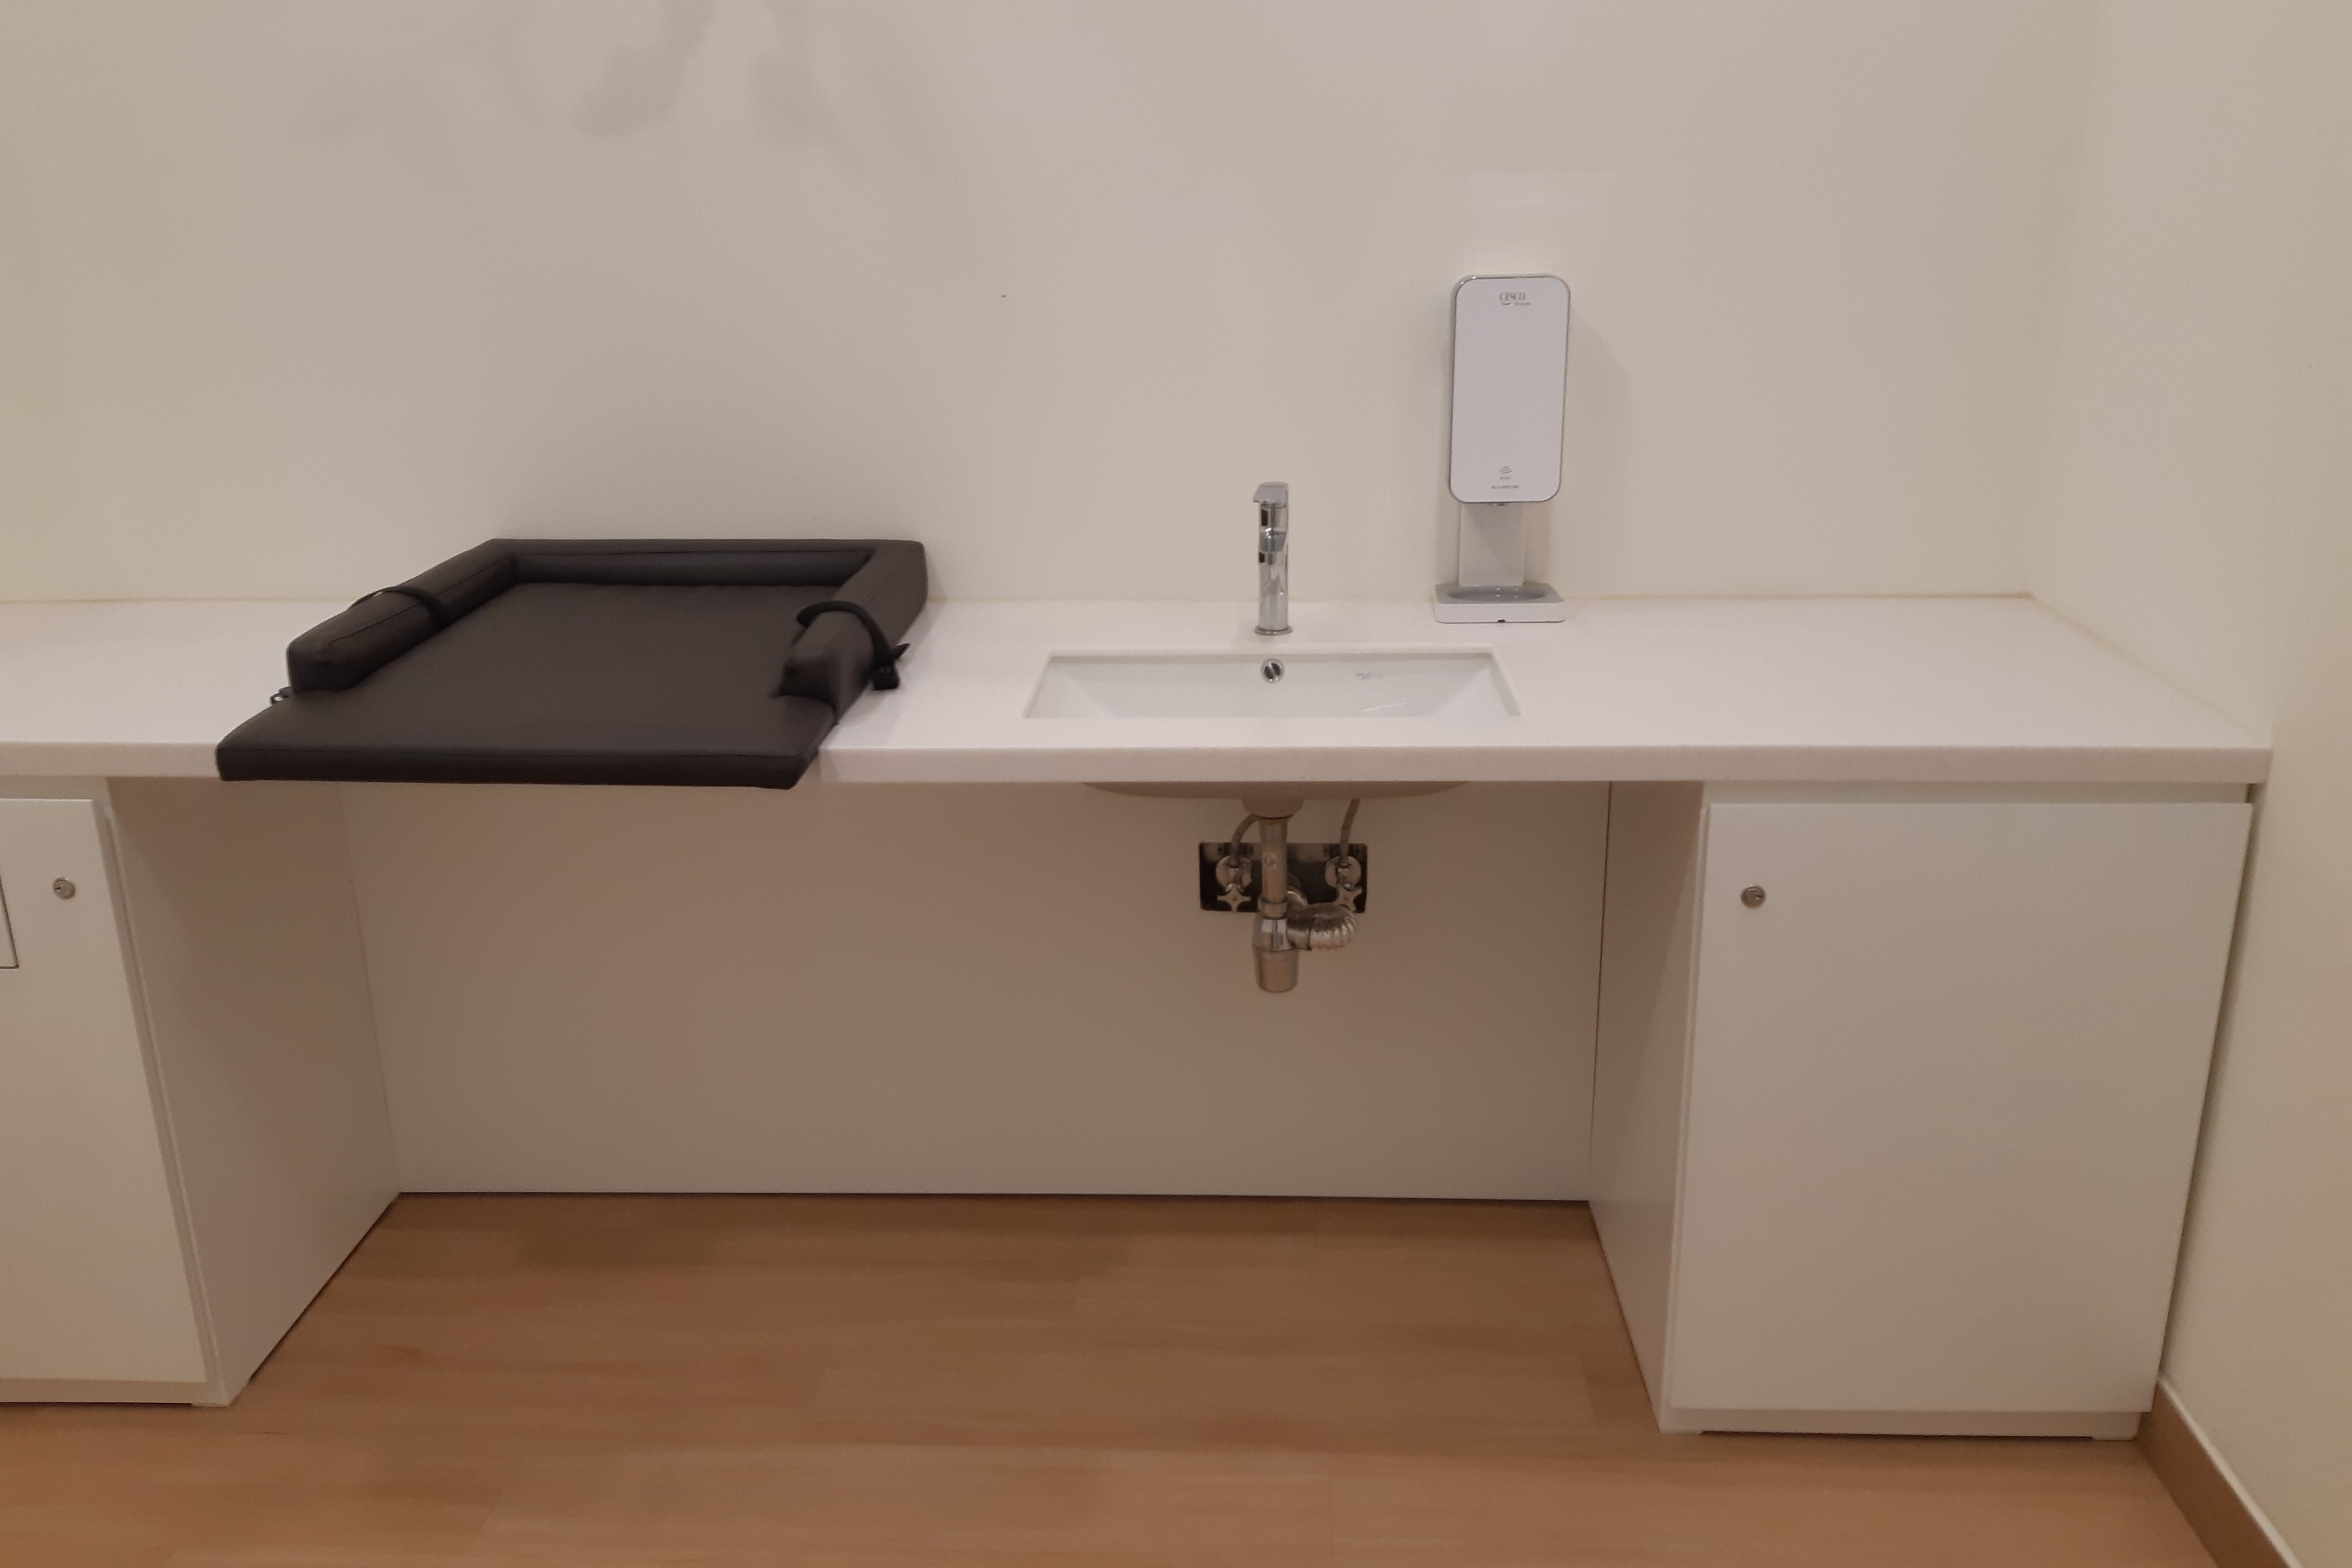 유아 휴게공간0 : 기저귀 교환대, 세면대, 손소독제가 일체형으로 설치된 긴 테이블